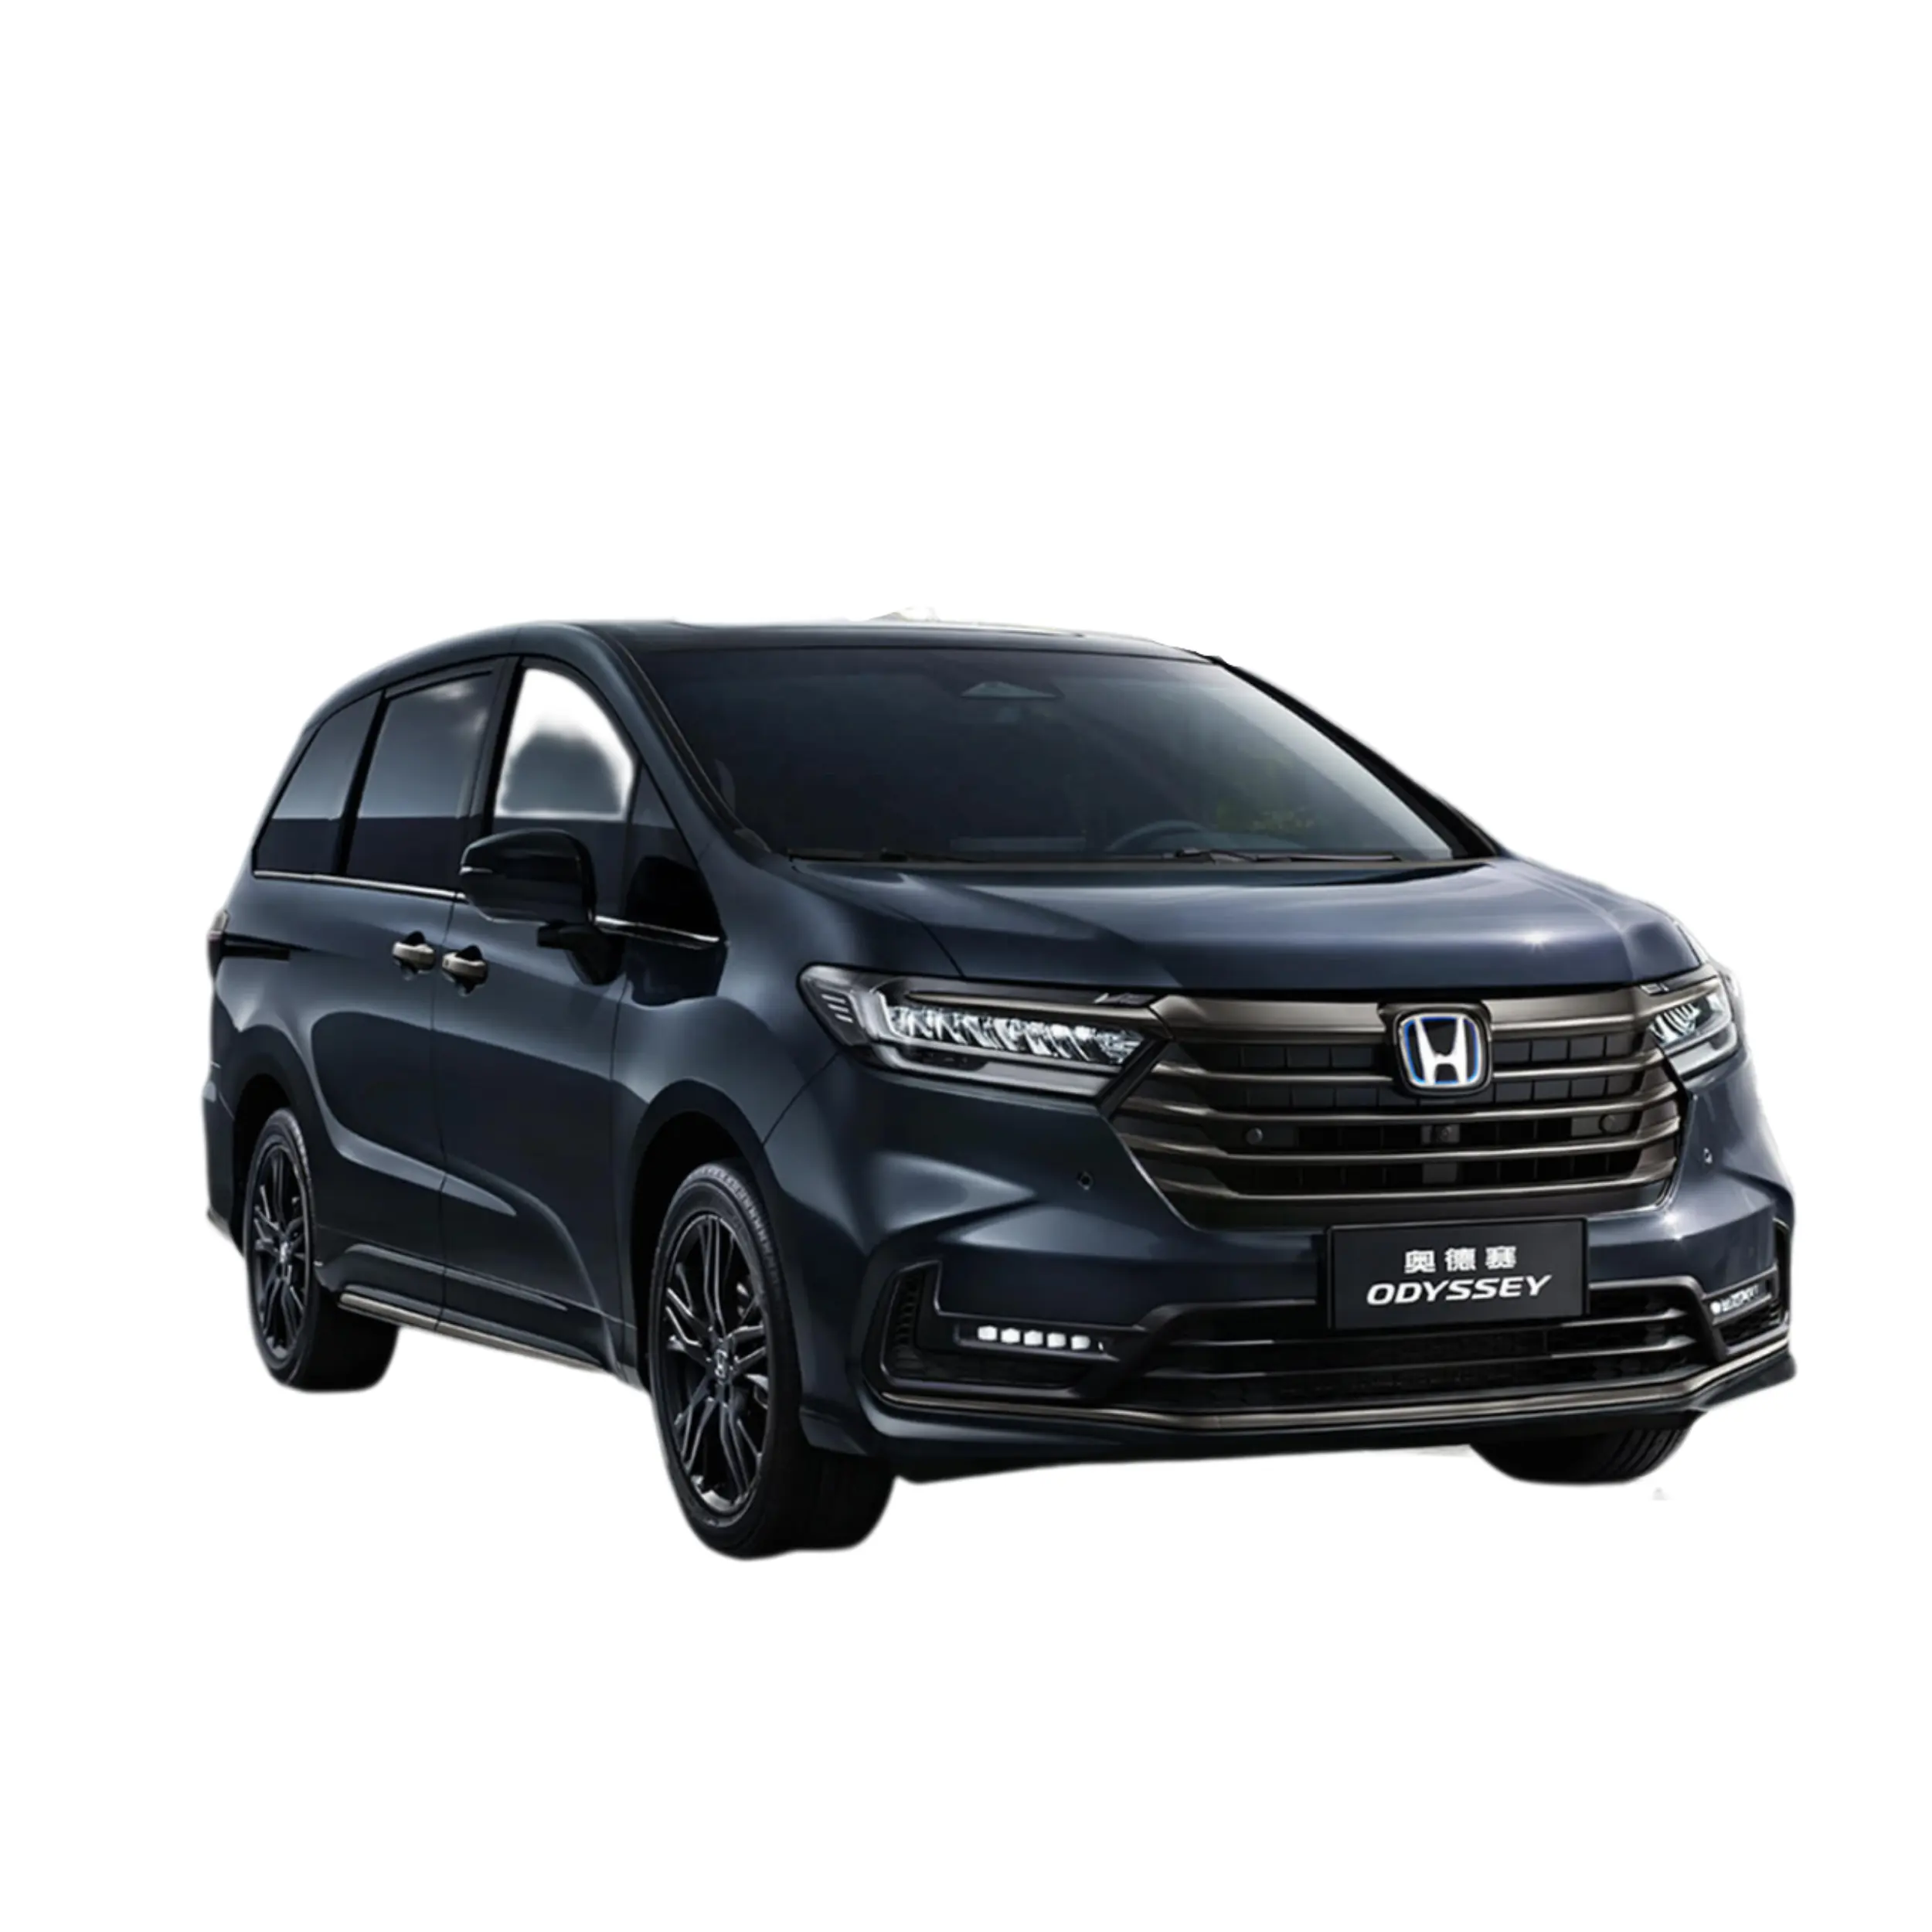 Nuova vendita calda Dongfeng Hondas Odyssey veicoli per adulti 7 posti MPV ibrido auto Made In cina a basso prezzo